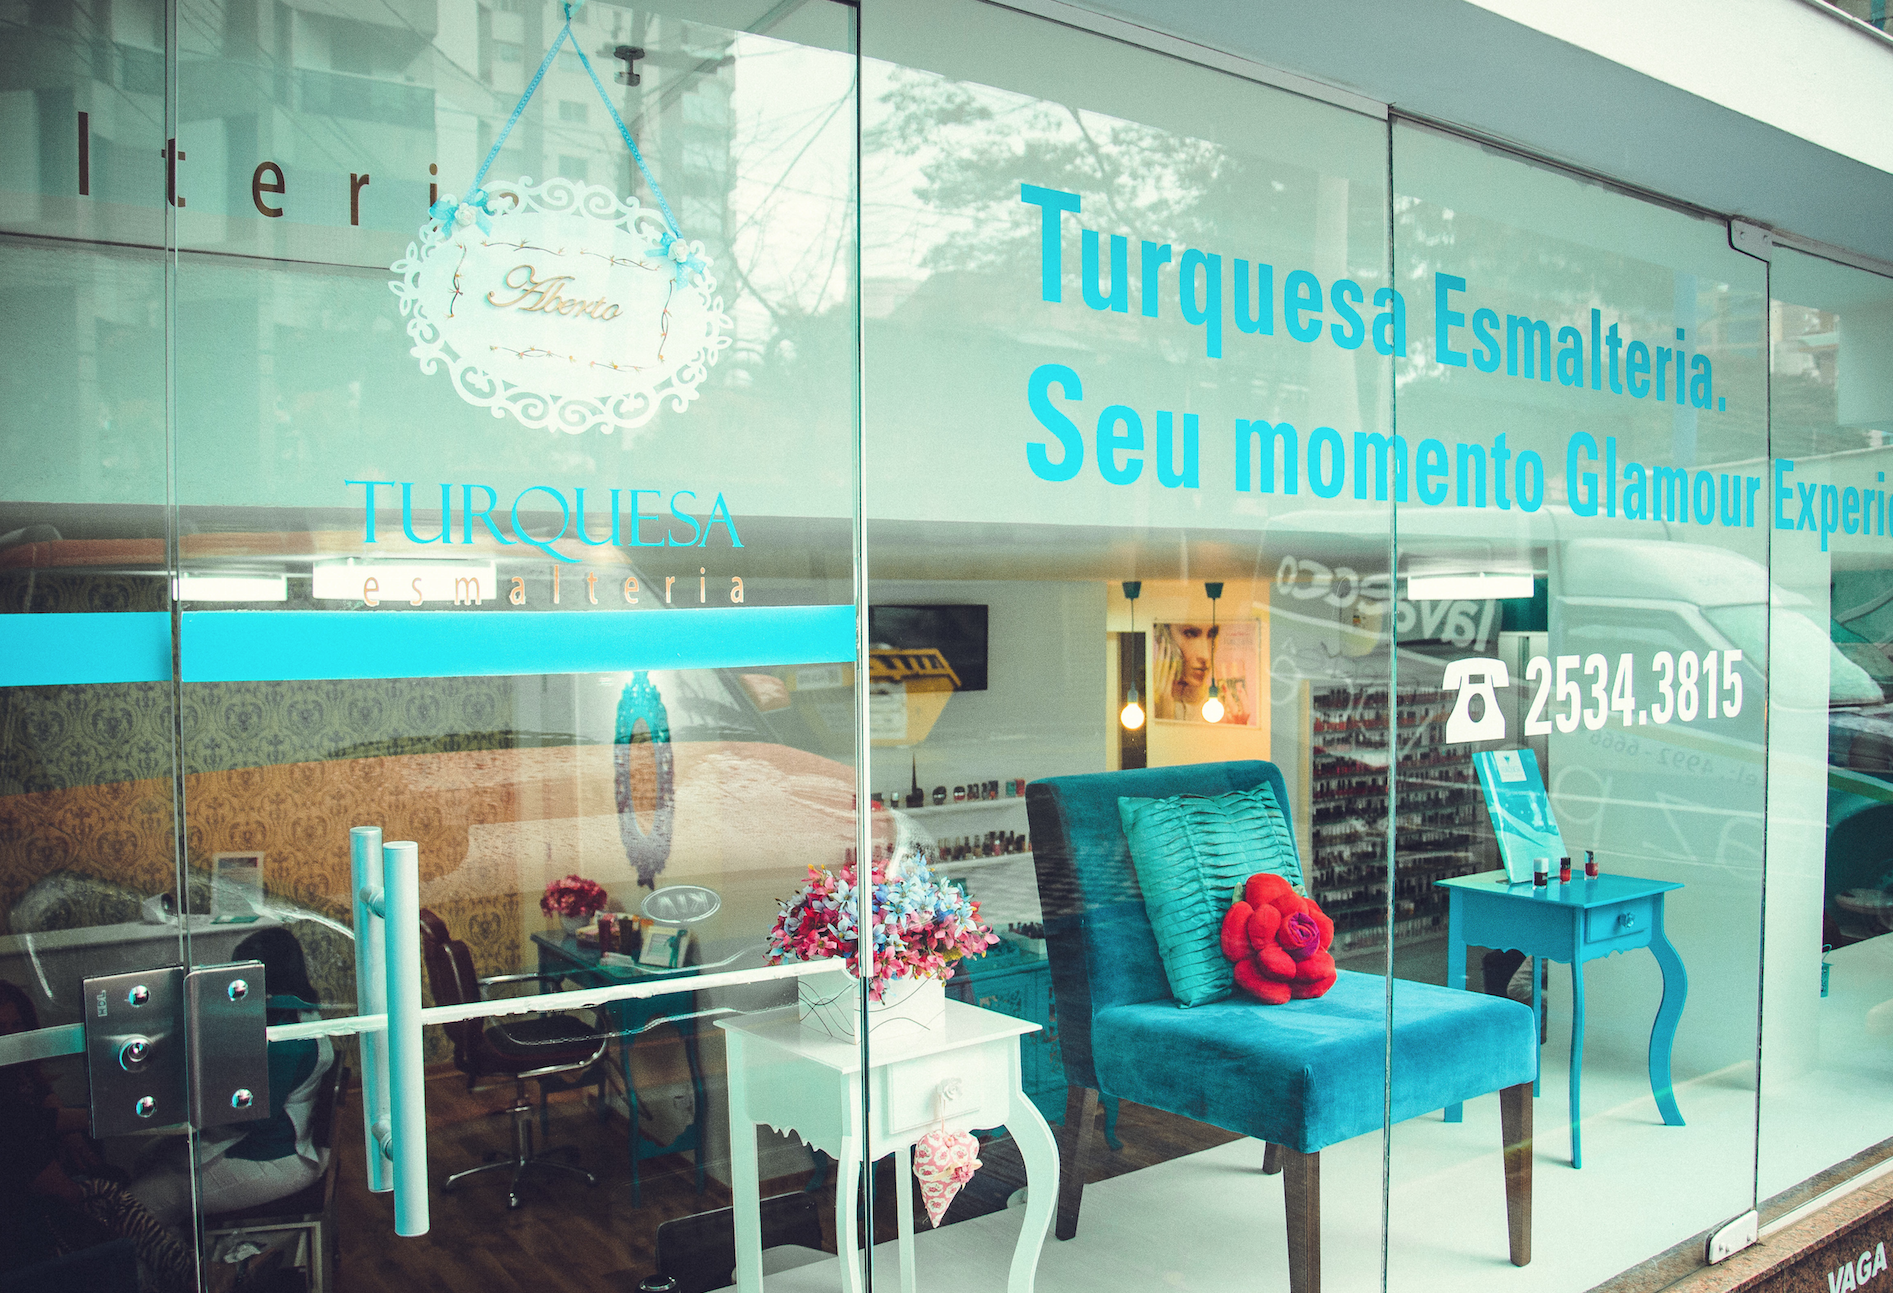 Turquesa Esmalteria & Beleza: franquia tem unidades com investimento inicial a partir de R$ 69 mil